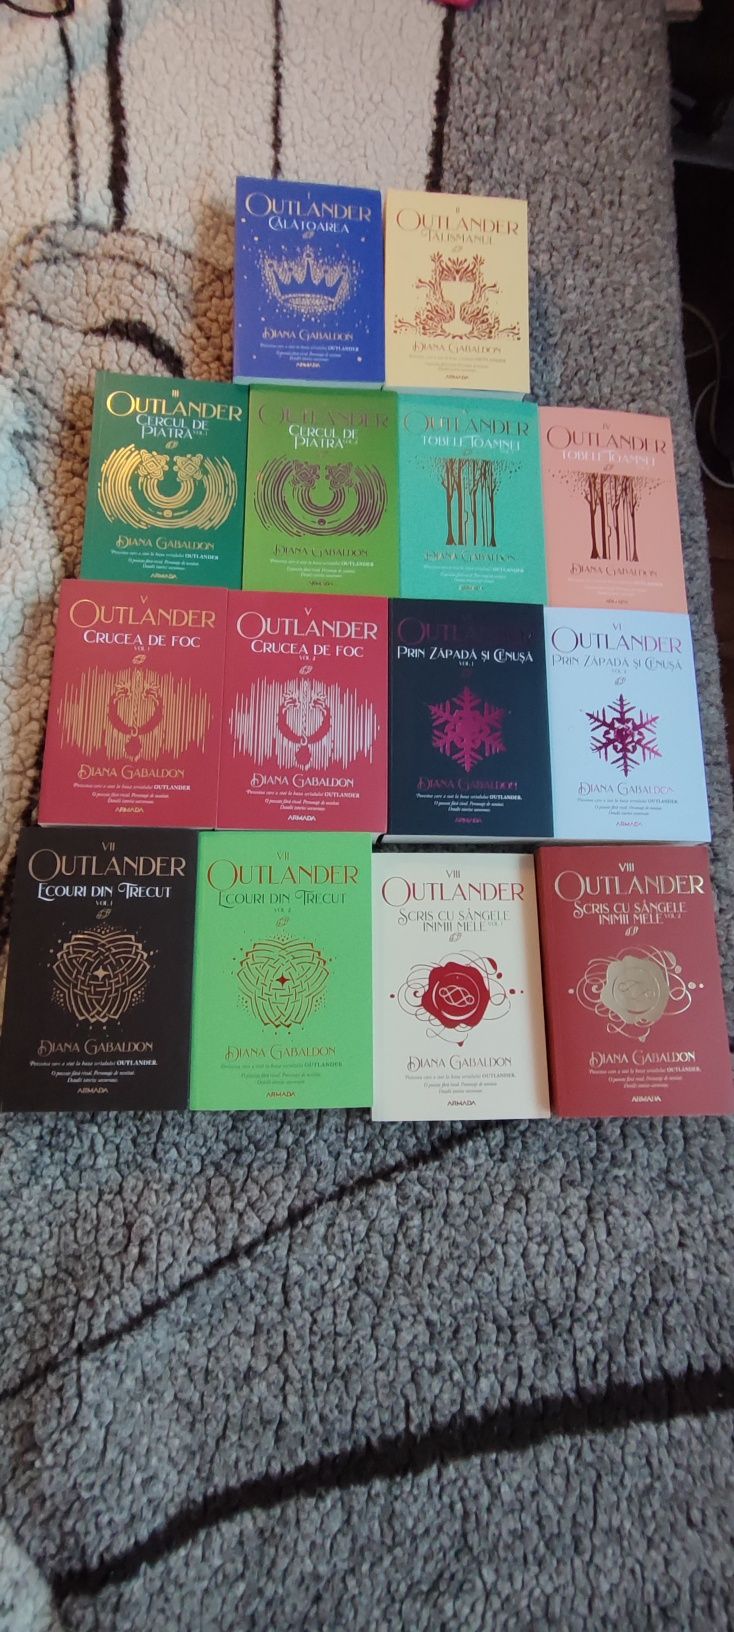 Vand serie completa 14 carti Outlander de Diana Gabaldon